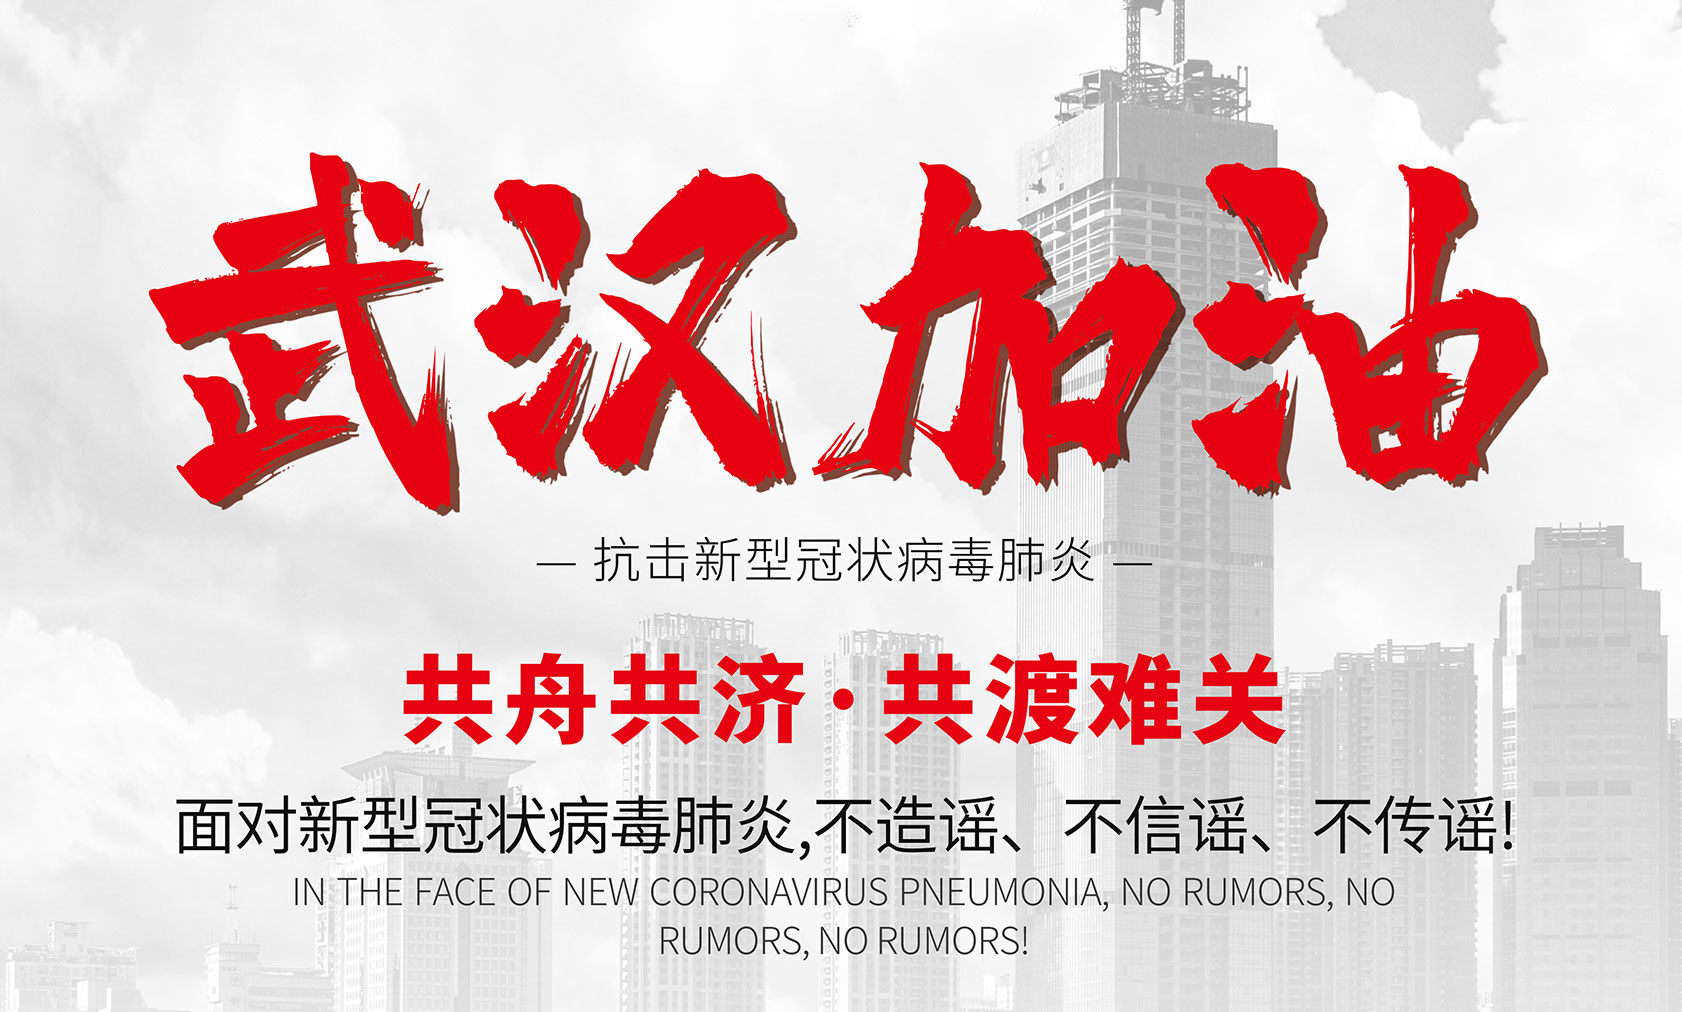 北京爱特拉斯信息科技有限公司向全体一线工作人员致敬